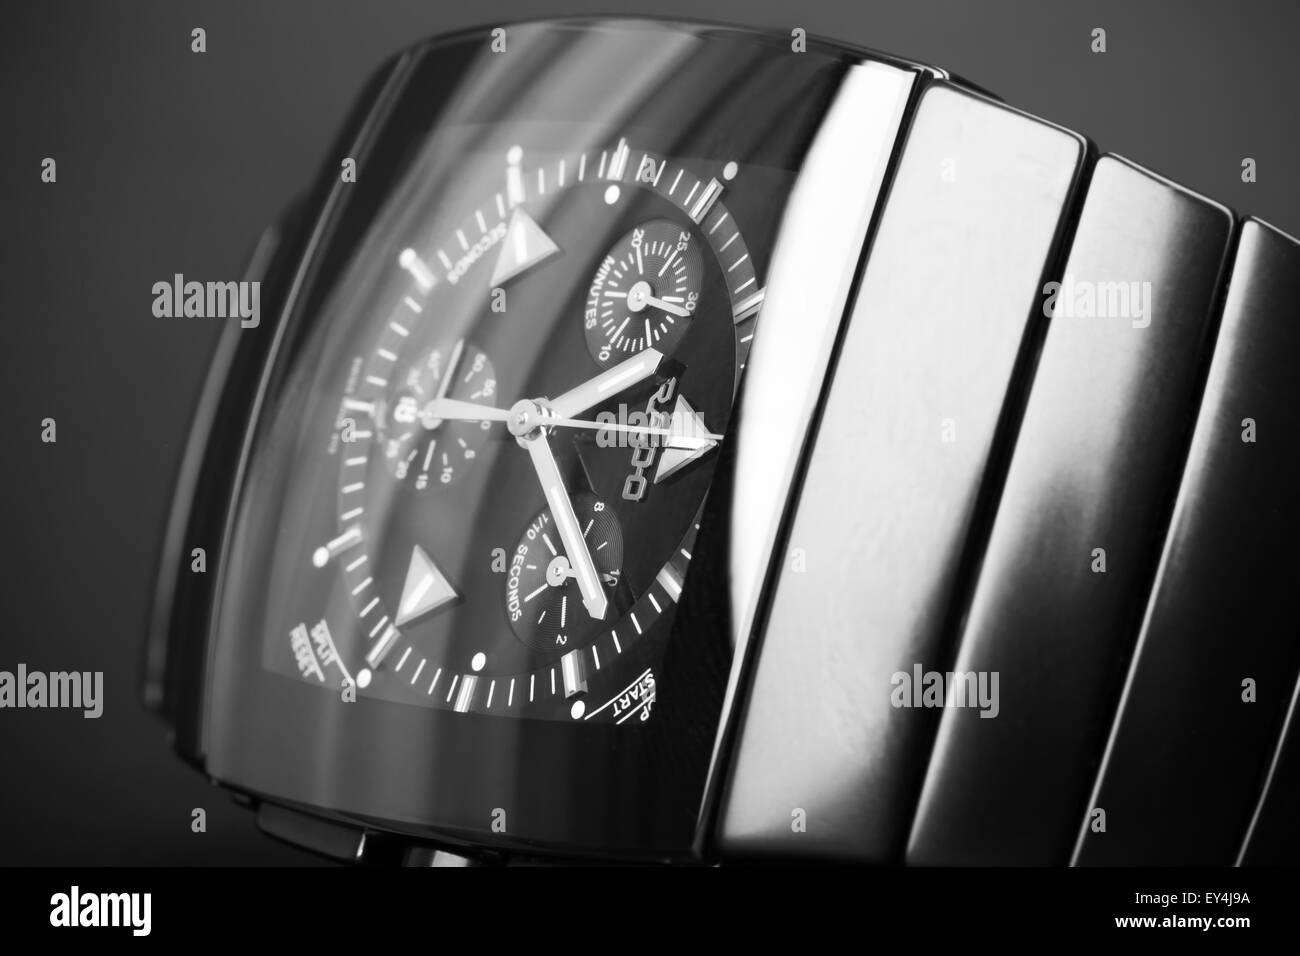 Saint-pétersbourg, Russie - le 18 juin 2015 : Rado Sintra Chrono Montre chronographe pour hommes, fait de la céramique high-tech noire. Close up Banque D'Images